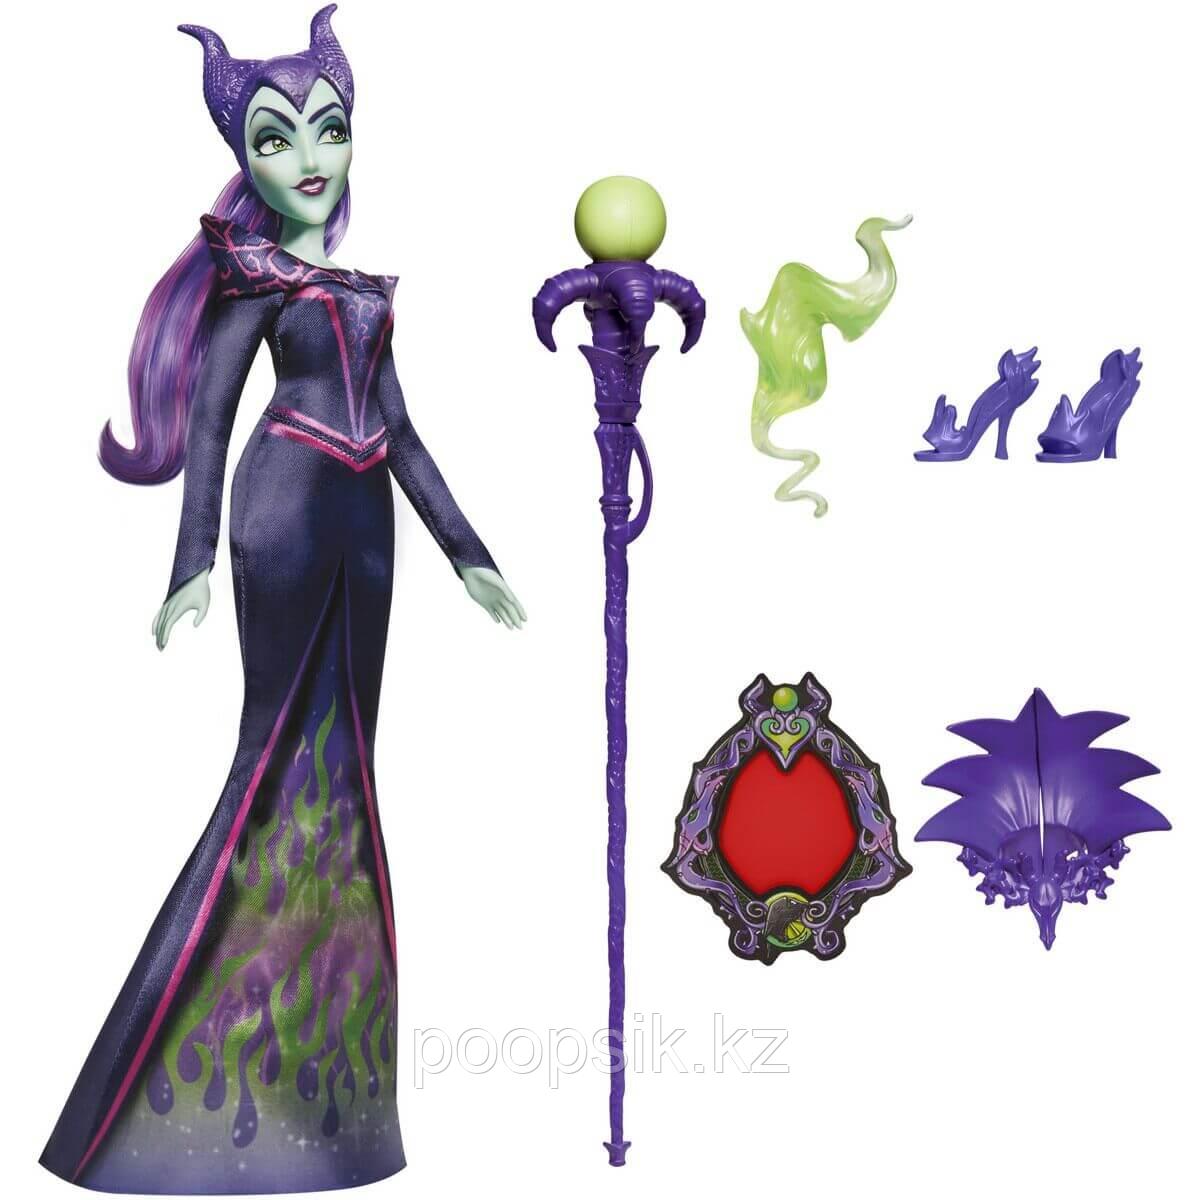 Кукла Малефисента Hasbro Disney Villains